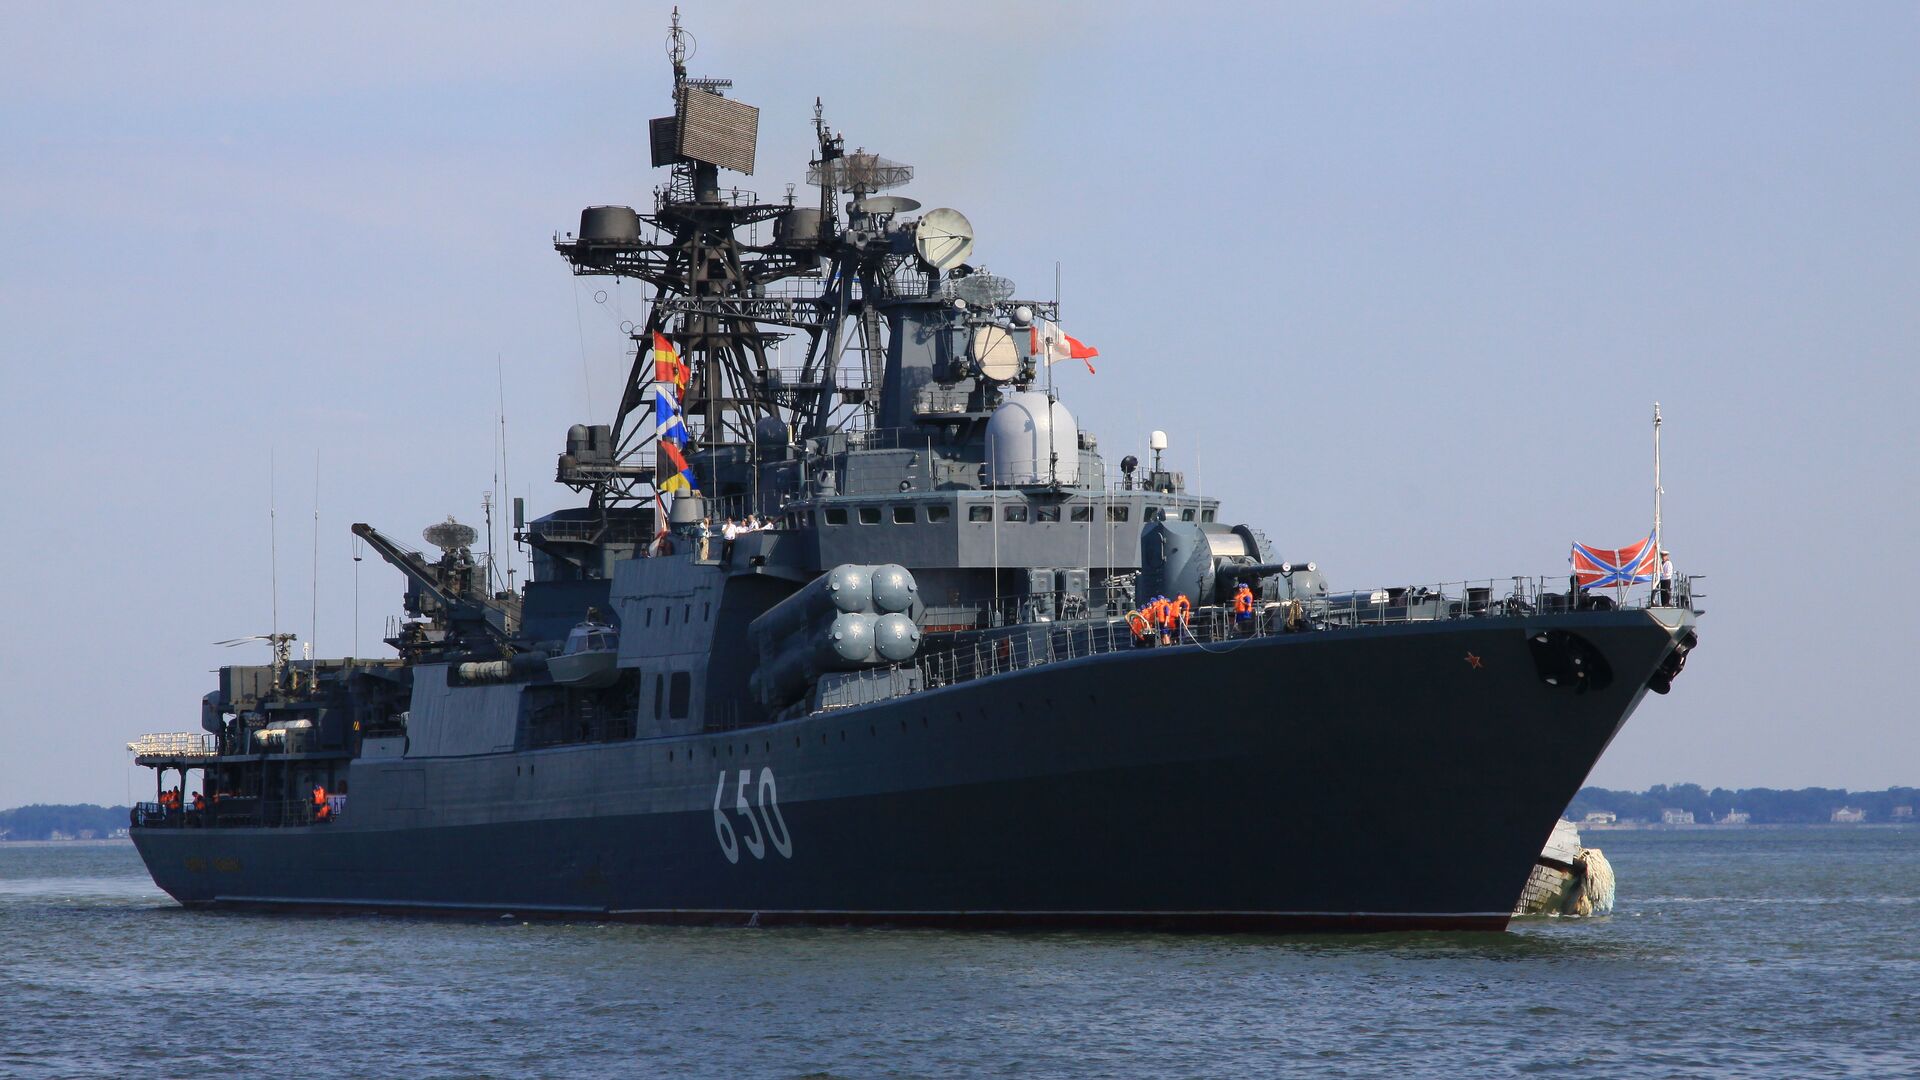 Большой противолодочный корабль «Адмирал Чабаненко», учения ФРУКУС-2011, база ВМС США Норфолк (штат Виргиния), 1 июля 2011 года - РИА Новости, 1920, 13.01.2022